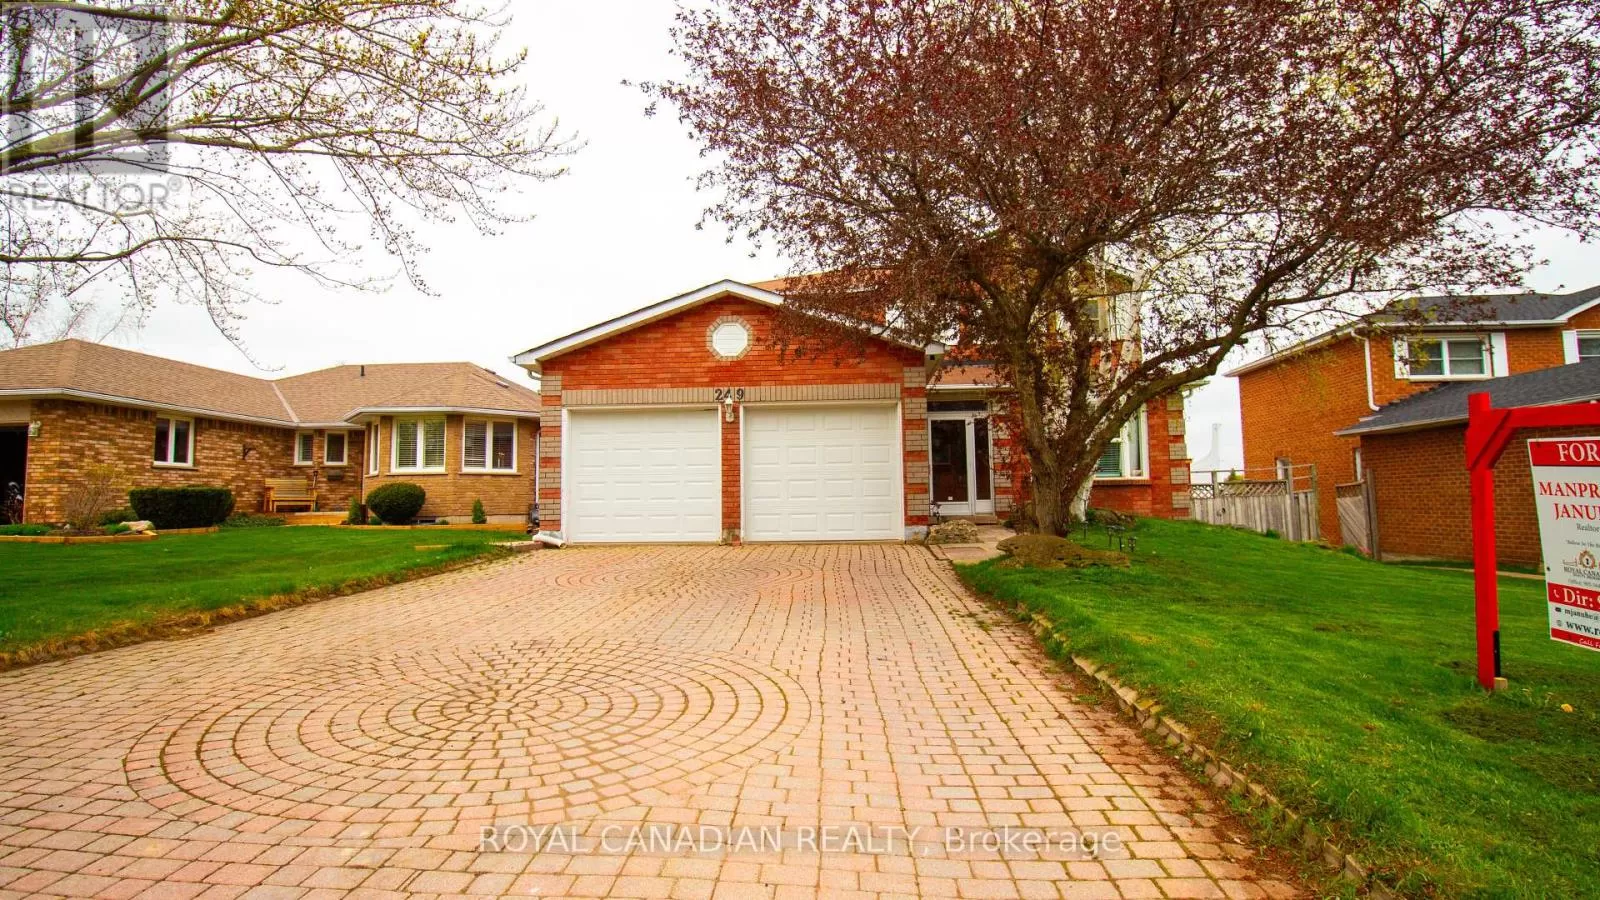 House for rent: 249 Edenwood Crescent, Orangeville, Ontario L9W 4M7